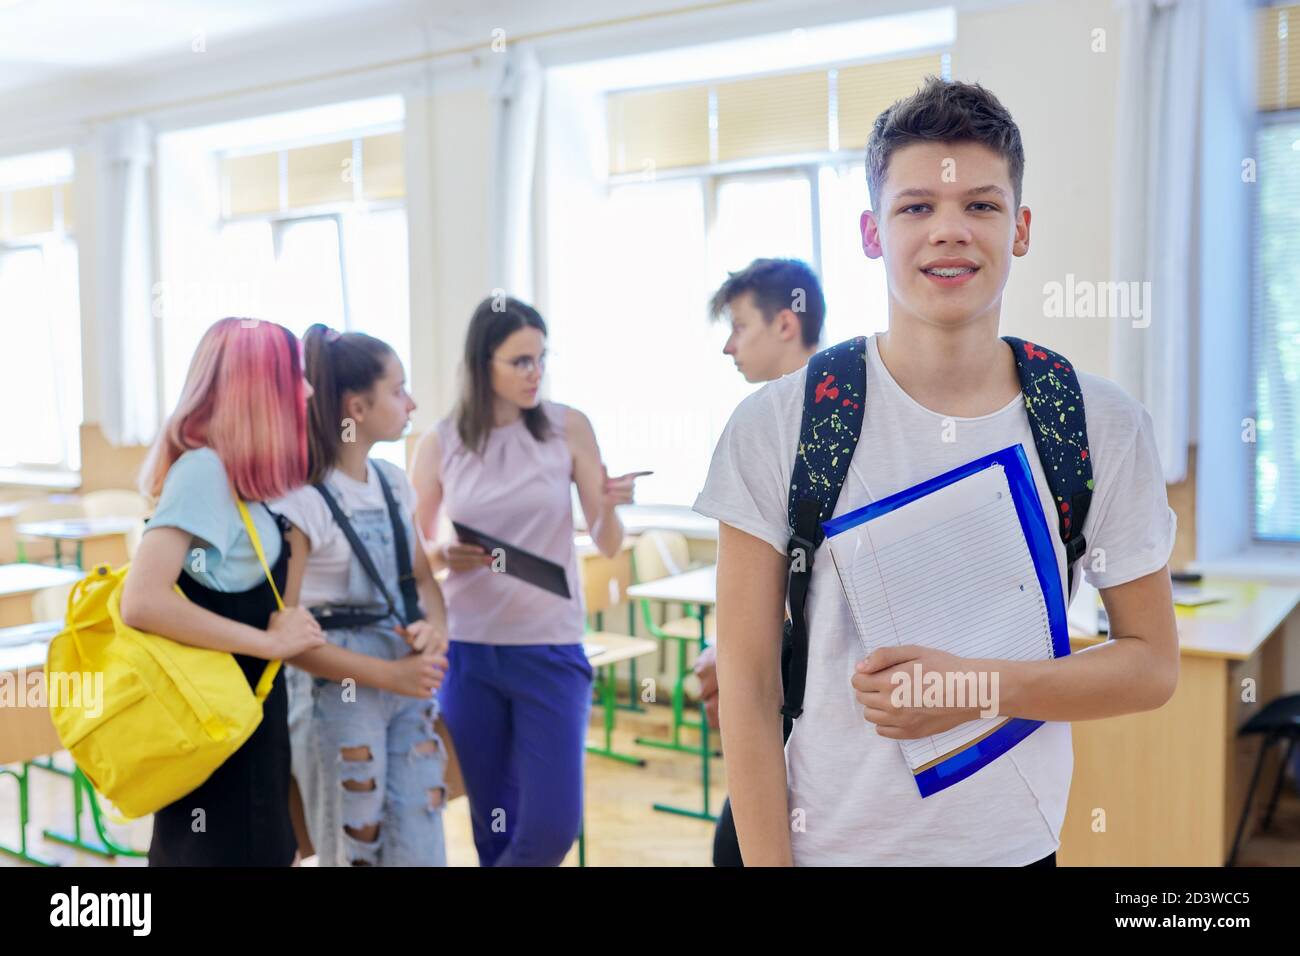 Porträt eines Jungen im Teenageralter, der die Kamera anschaut, Schüler im Klassenzimmer Stockfoto